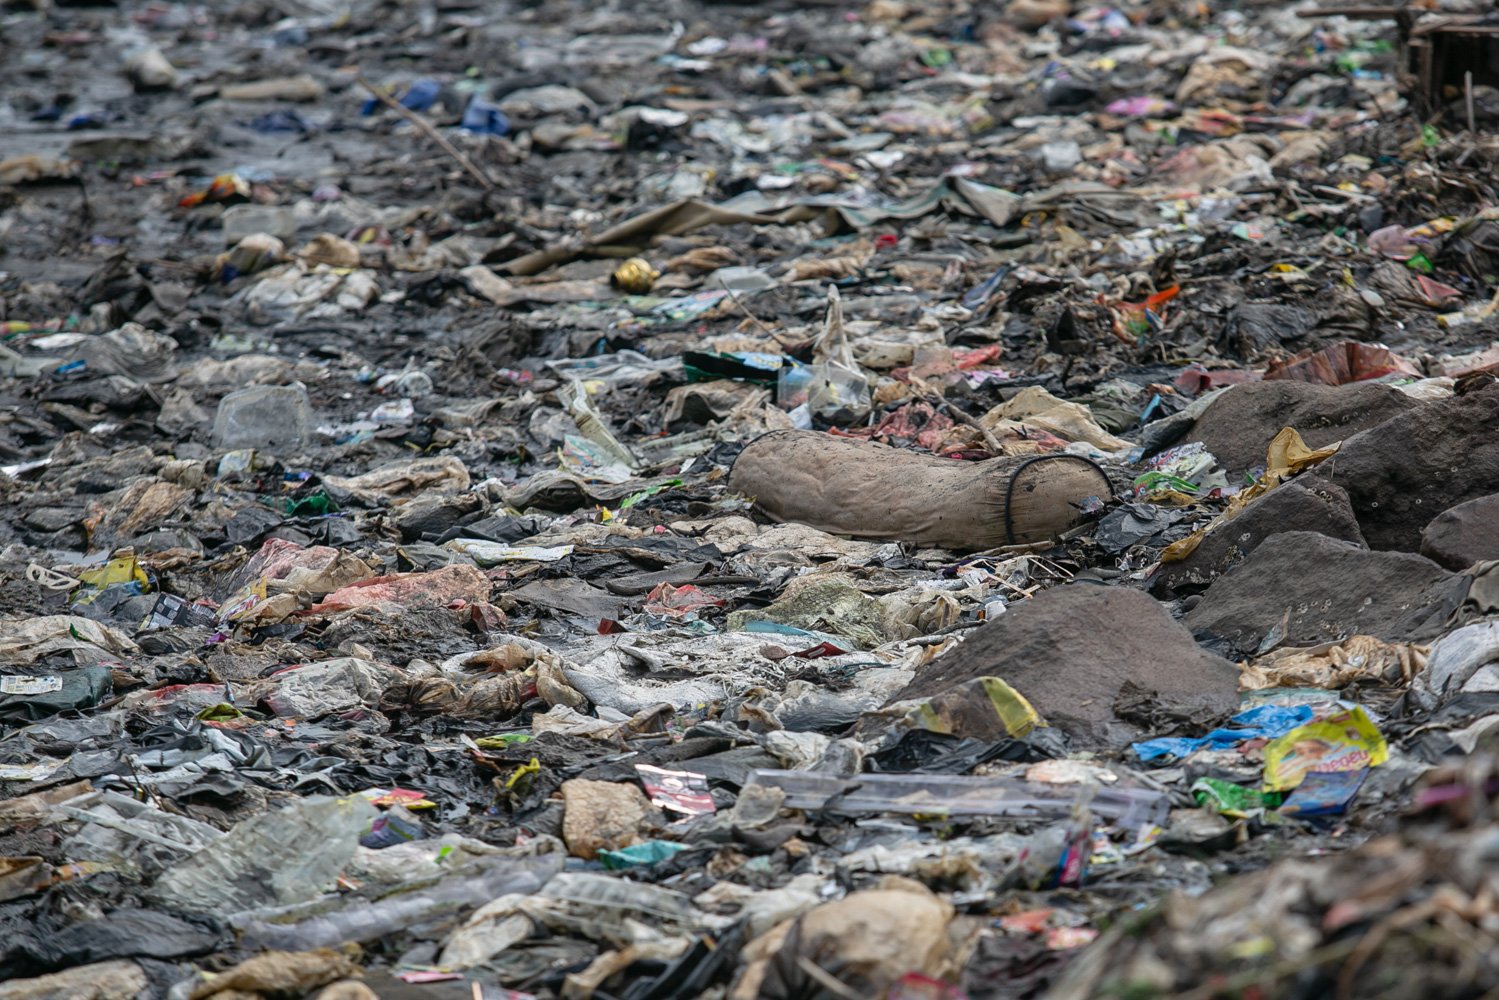 Tumpukan sampah terlihat di sekitar Pantai Marunda, Cilincing, Jakarta, Kamis (8/6). Dalam peringatan Hari Laut Internasional kondisi laut Jakarta masih dipenuhi sampah. Menurut KLHK Indonesia menghasilkan lebih dari 19 juta ton sampah sepanjang 2022, 18 persennya sampah plastik yang sebagian ngalir ke laut.